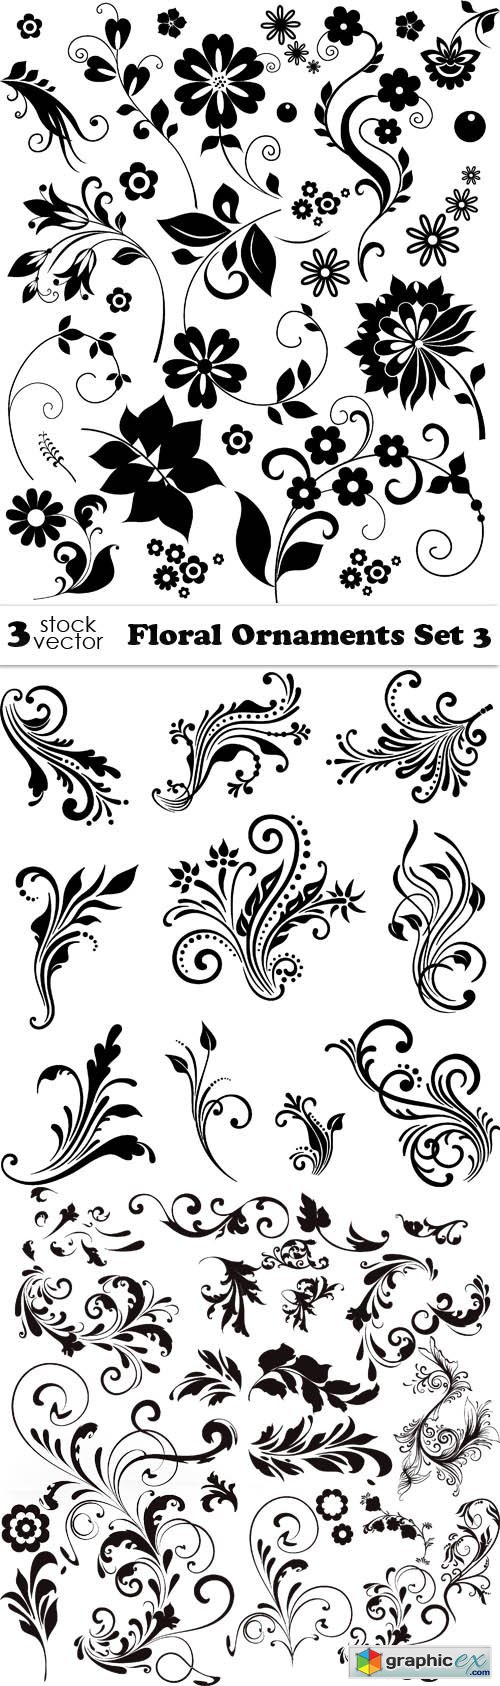 Floral Ornaments Set 3